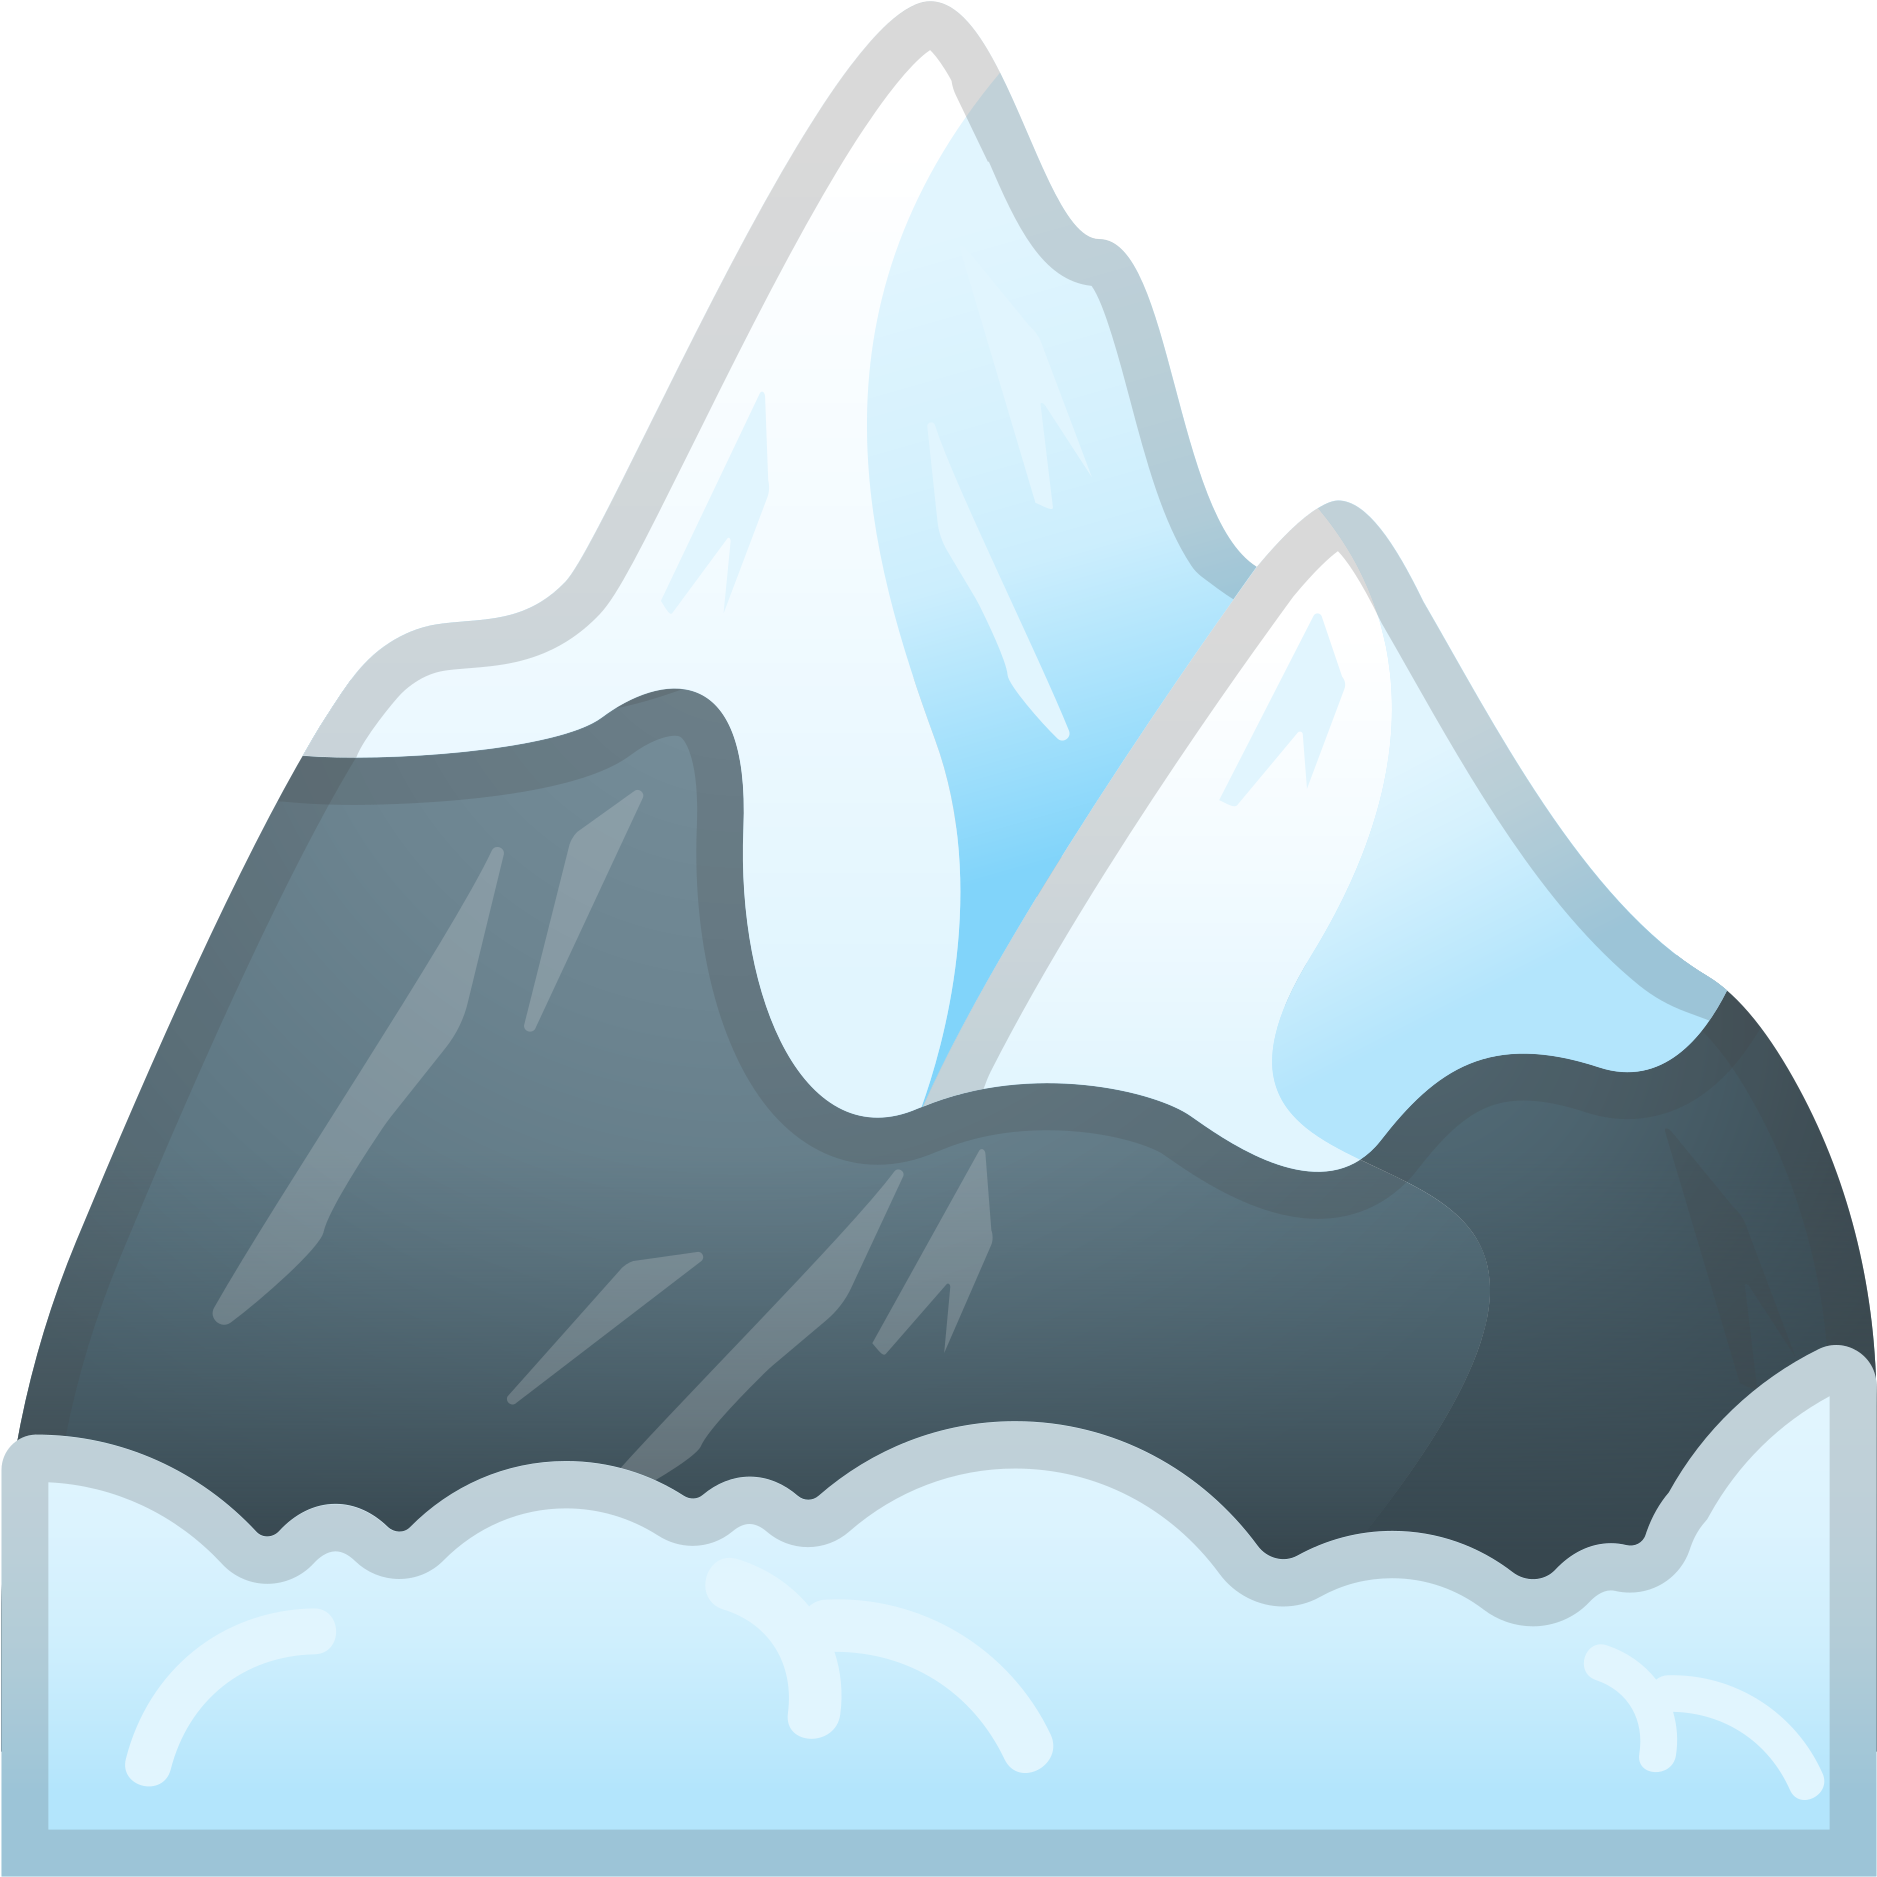 Snowy Mountain Peaks Vector Illustration